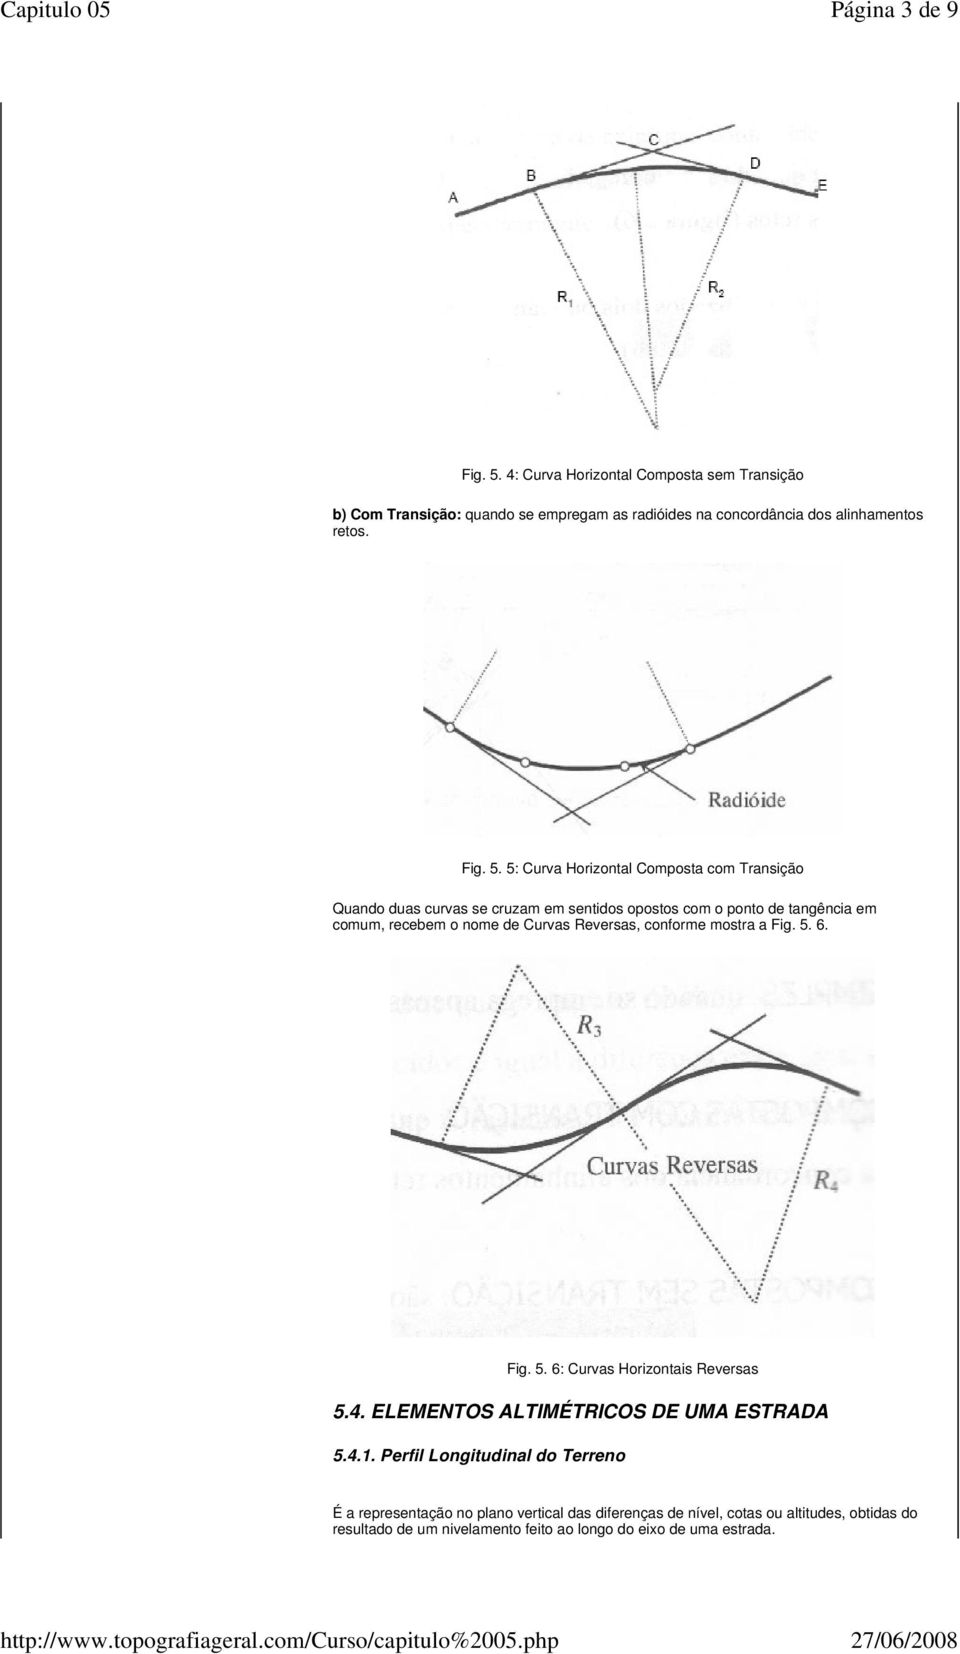 5: Curva Horizontal Composta com Transição Quando duas curvas se cruzam em sentidos opostos com o ponto de tangência em comum, recebem o nome de Curvas